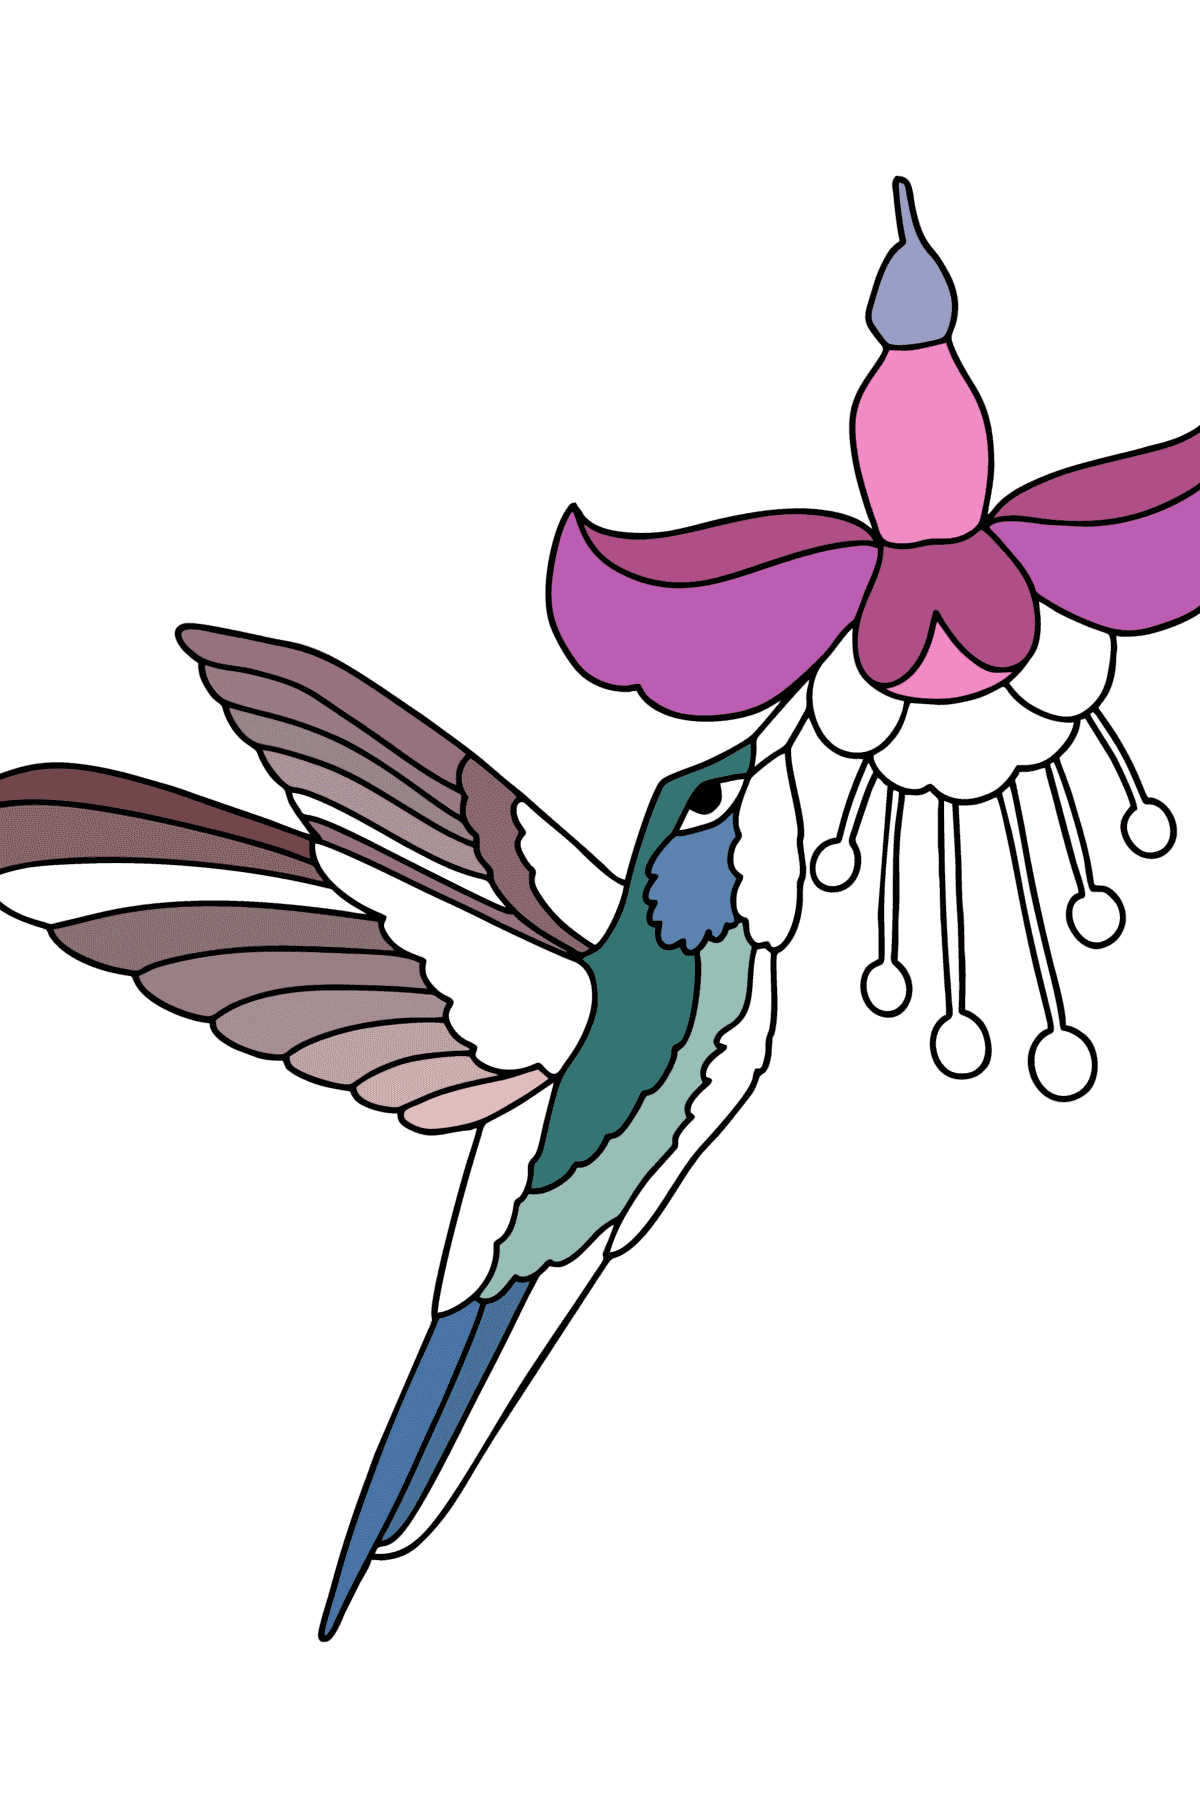 Kolibri-Dschungel ausmalbild - Malvorlagen für Kinder